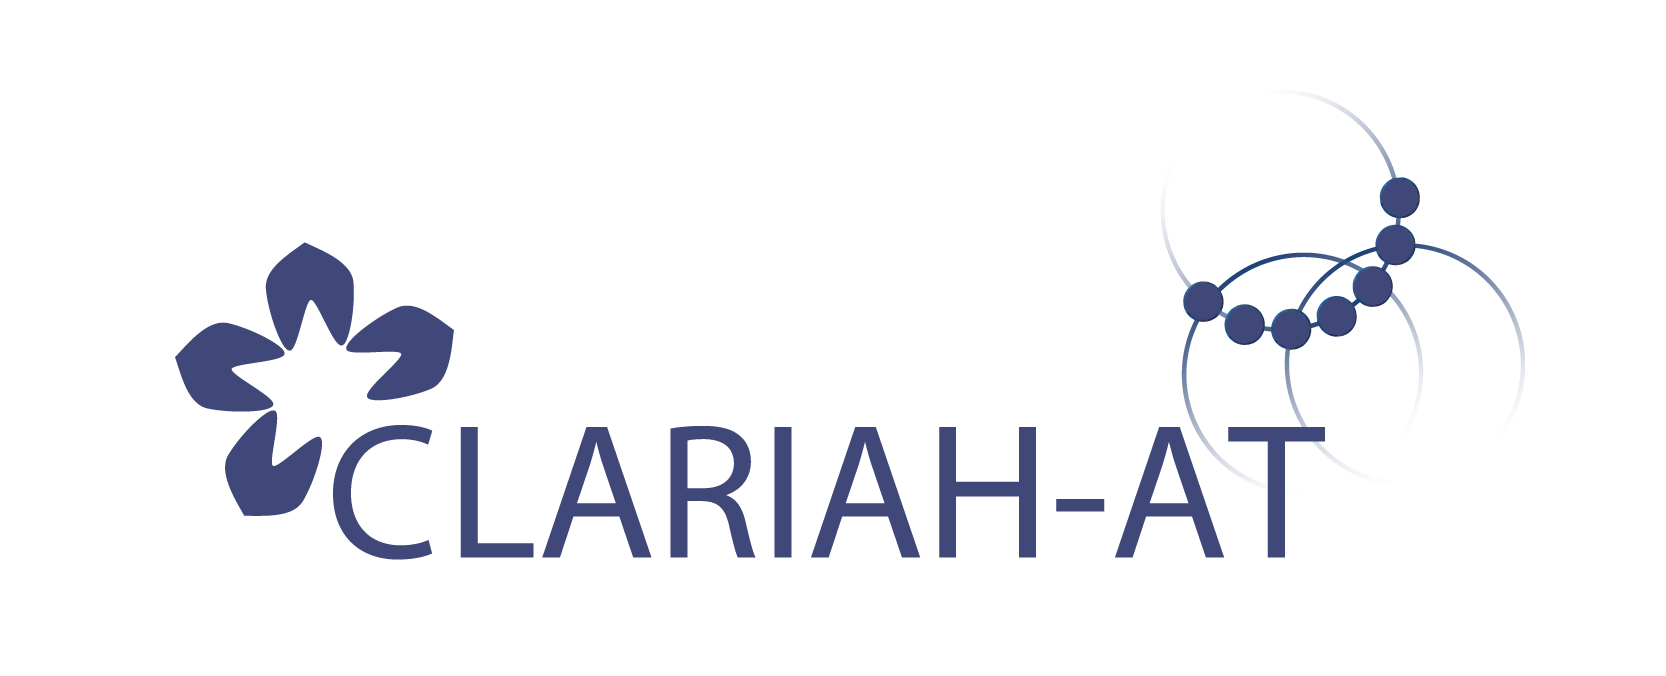 CLARIAH-AT Consortium Logo